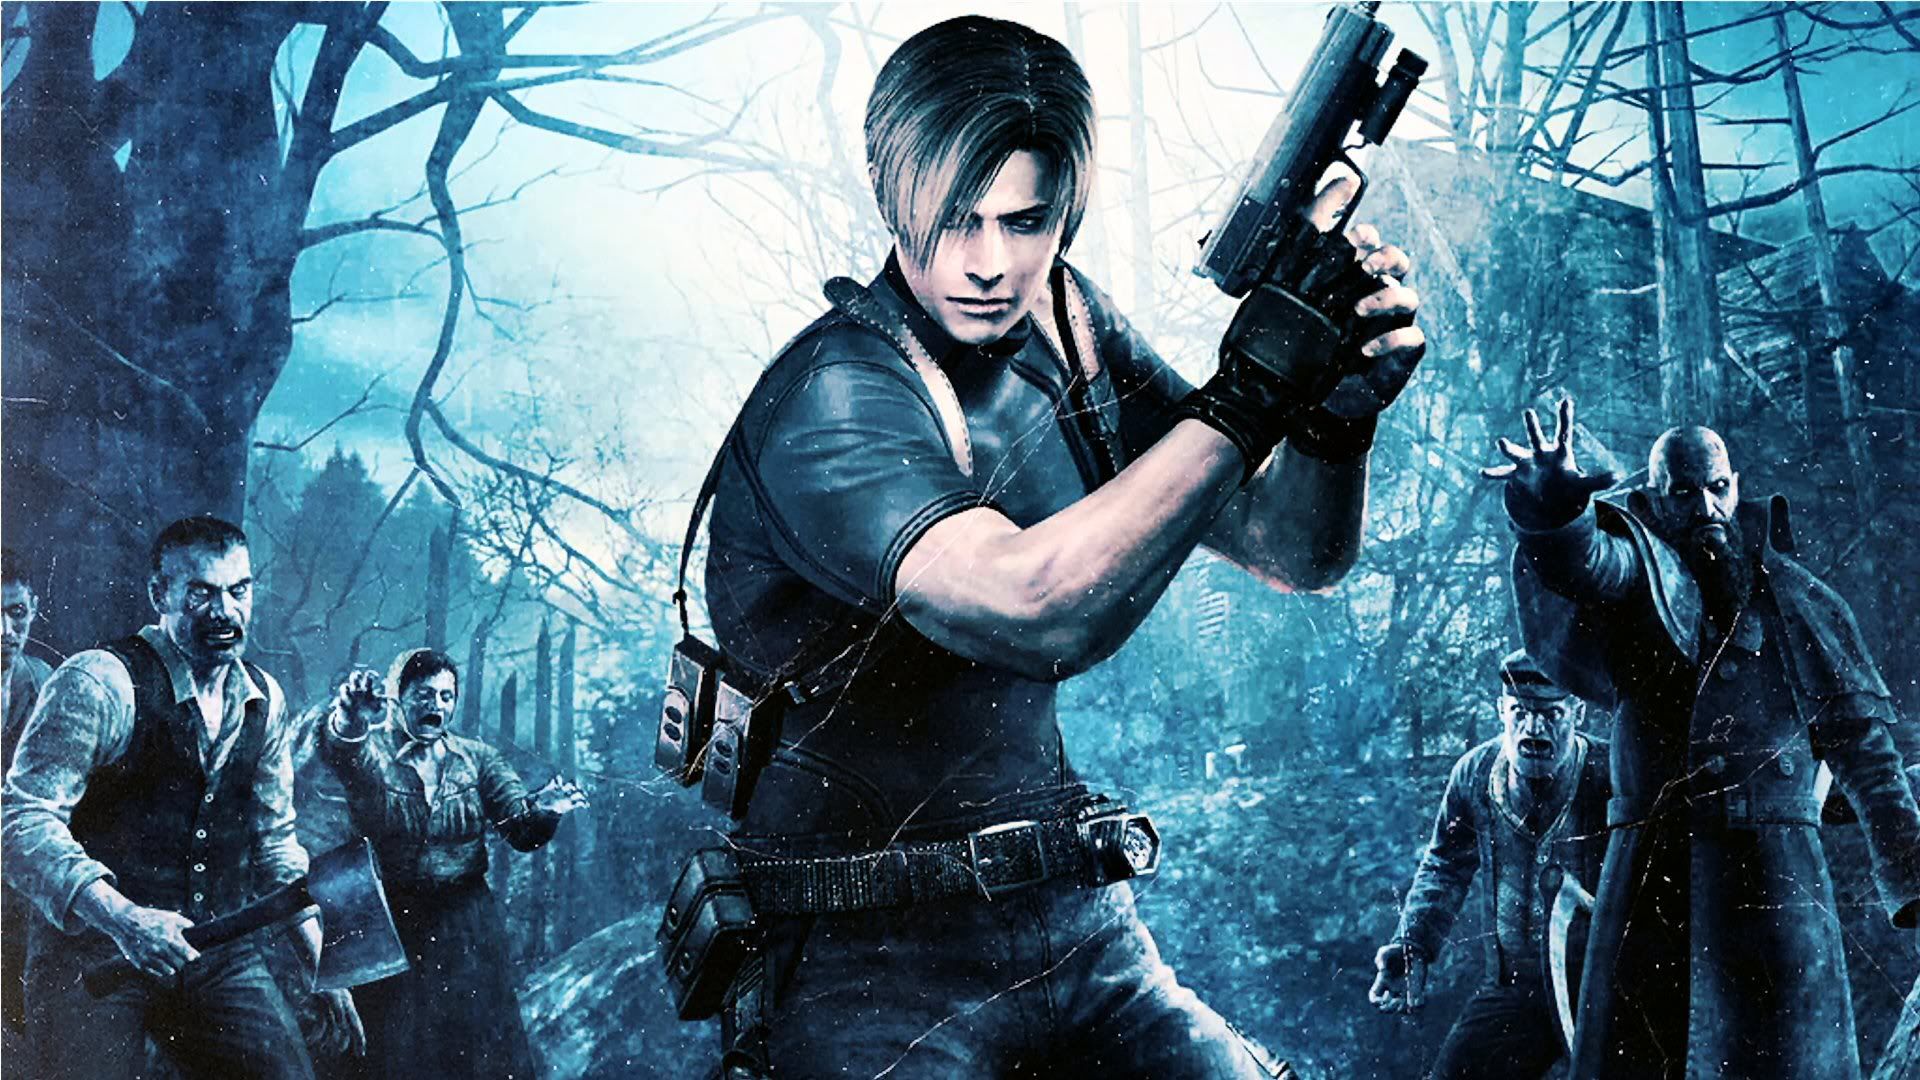 Chapitre 1 Resident Evil 4 : Village, Ferme, Habitations Lacustres... Comment le finir ?